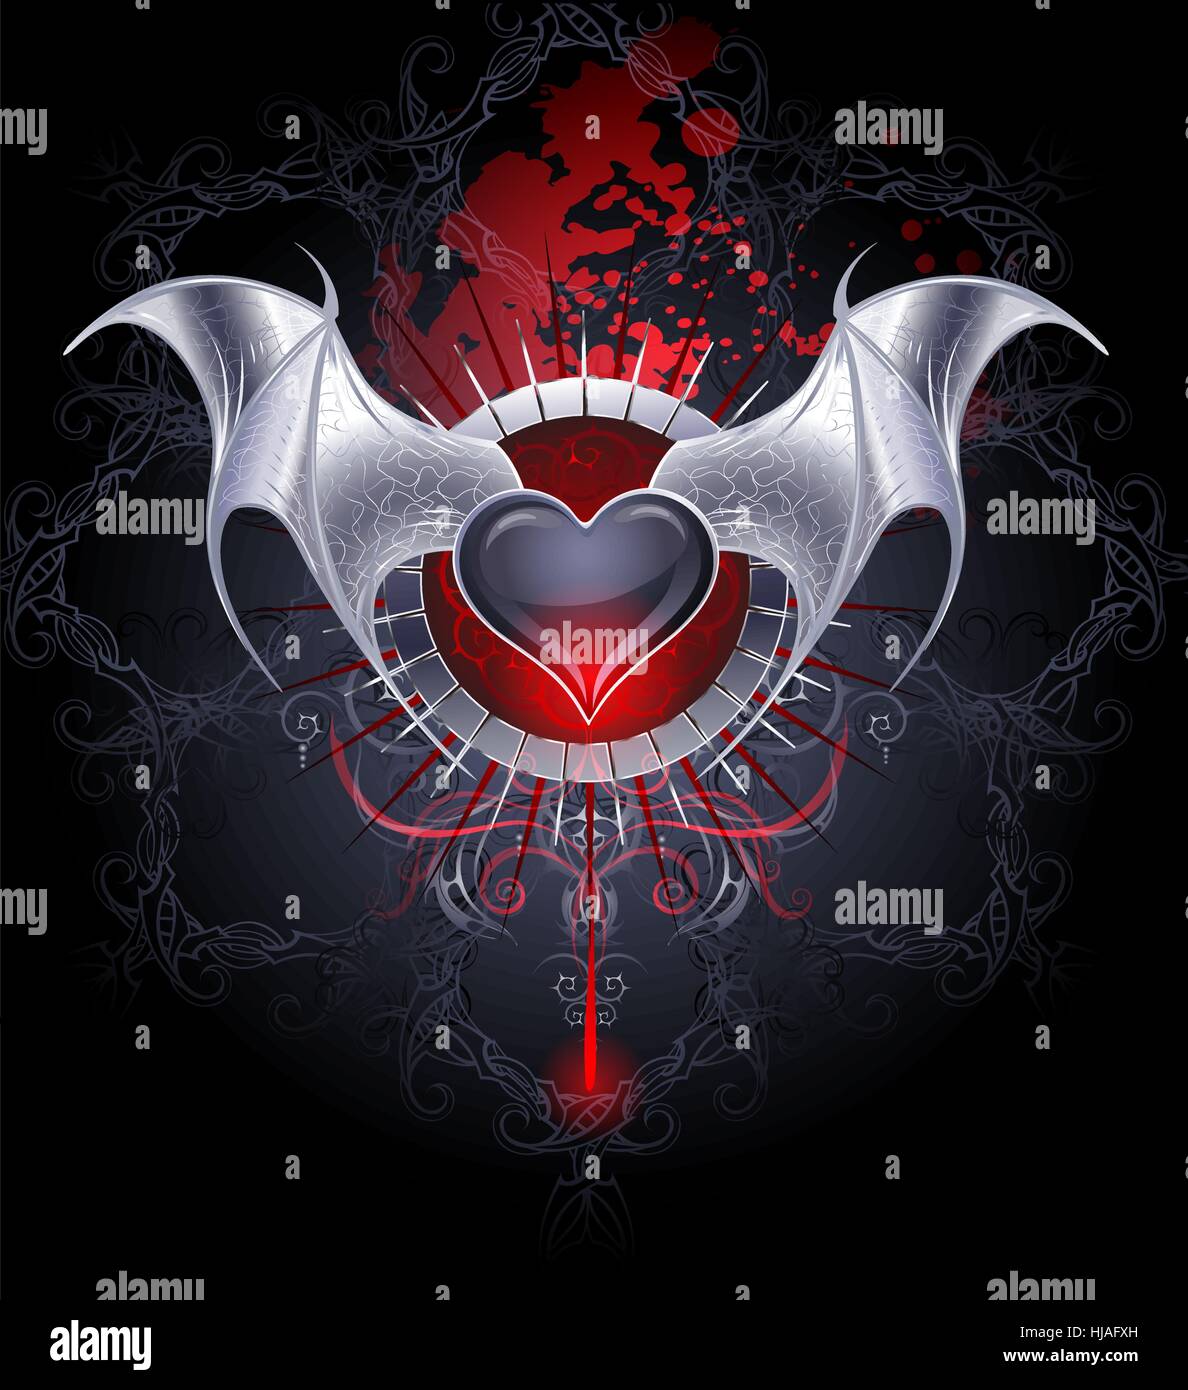 Nero vampiro è di cuore con ali di argento in una black background modellato con gocce di sangue. Illustrazione Vettoriale